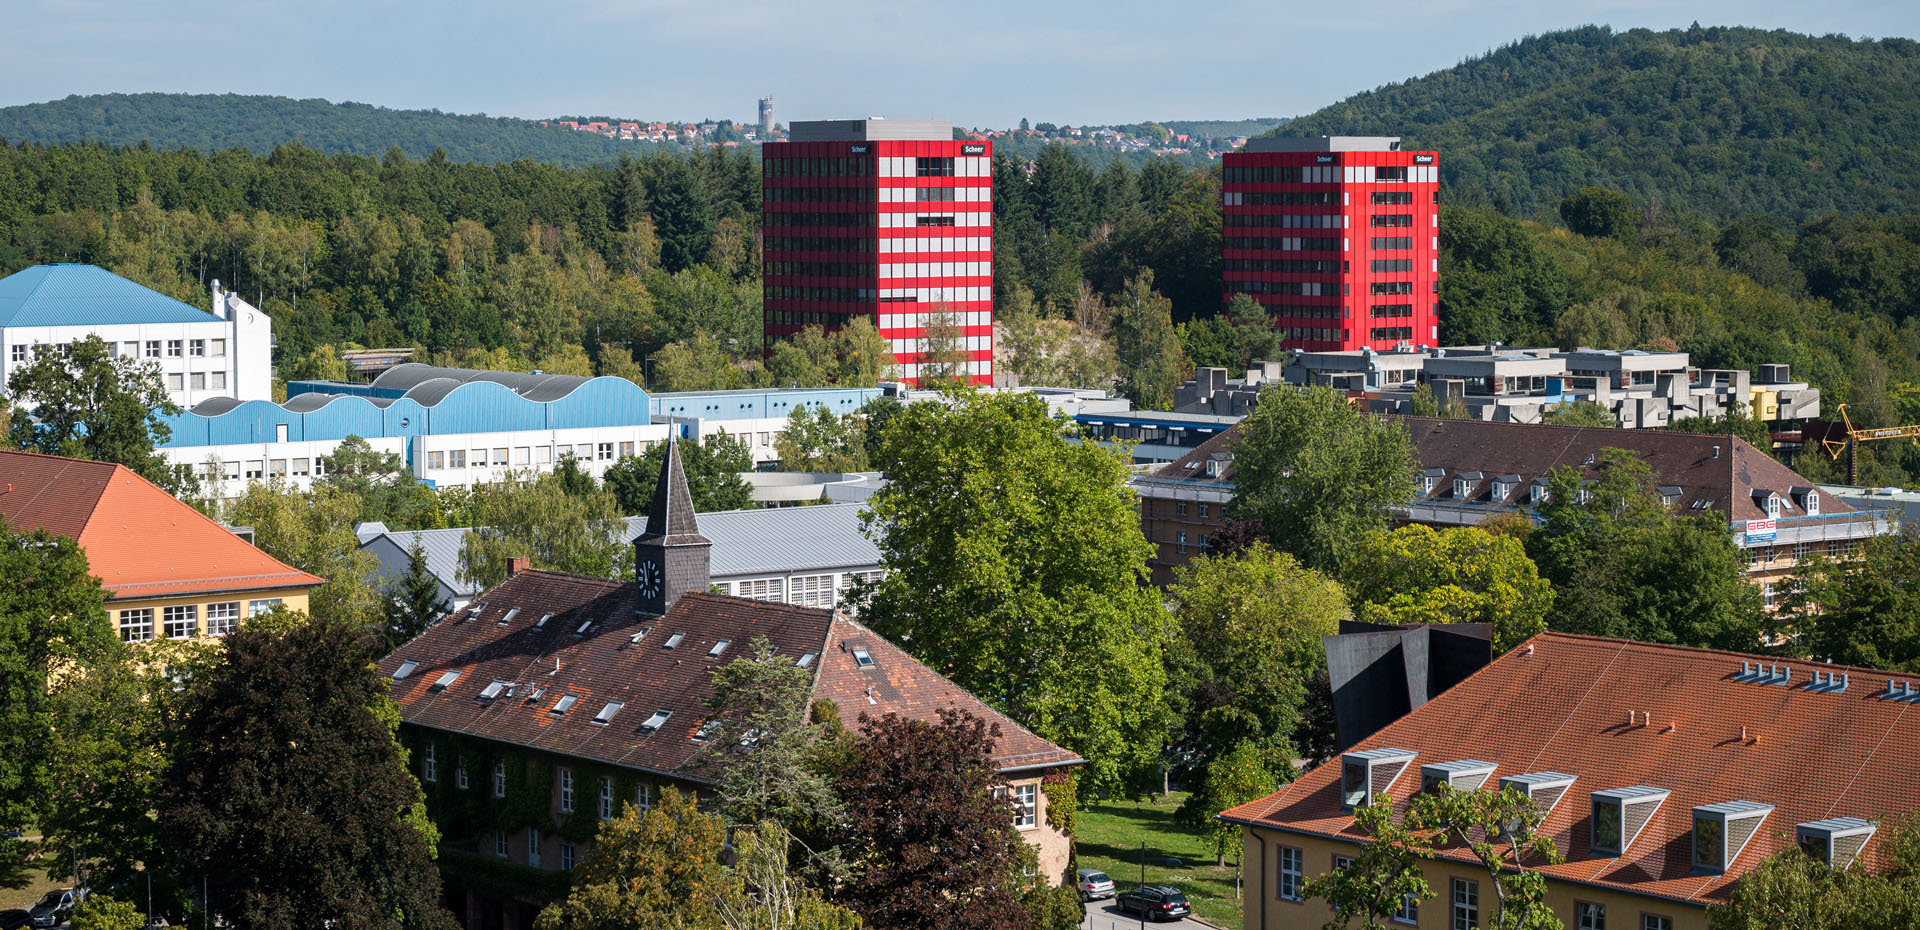 Blick über den Campus Saarbrücken